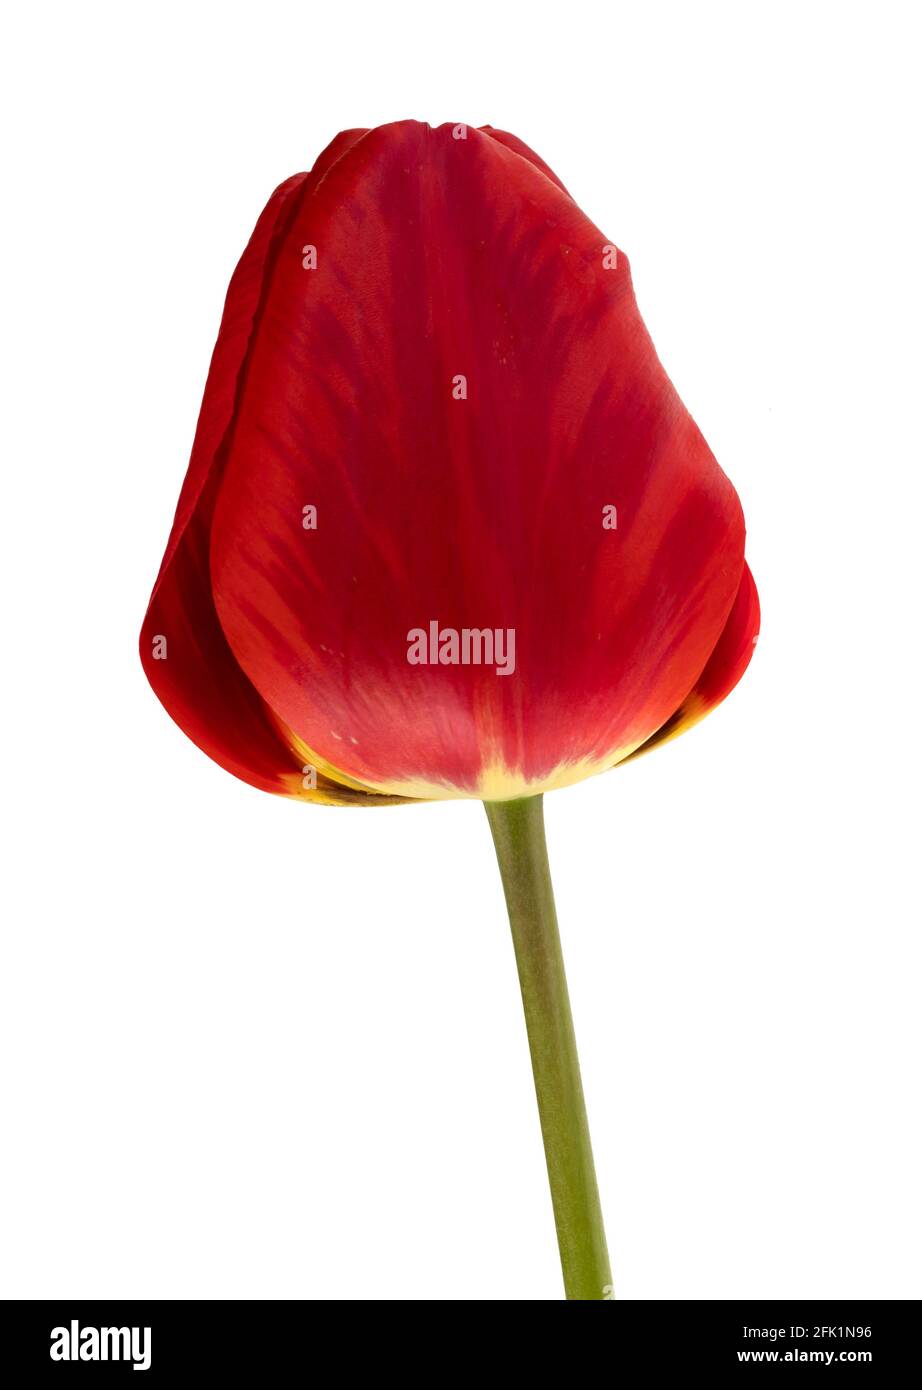 Fiori, germoglio di tulipano in fiore, colore rosso, su sfondo bianco, isolato Foto Stock